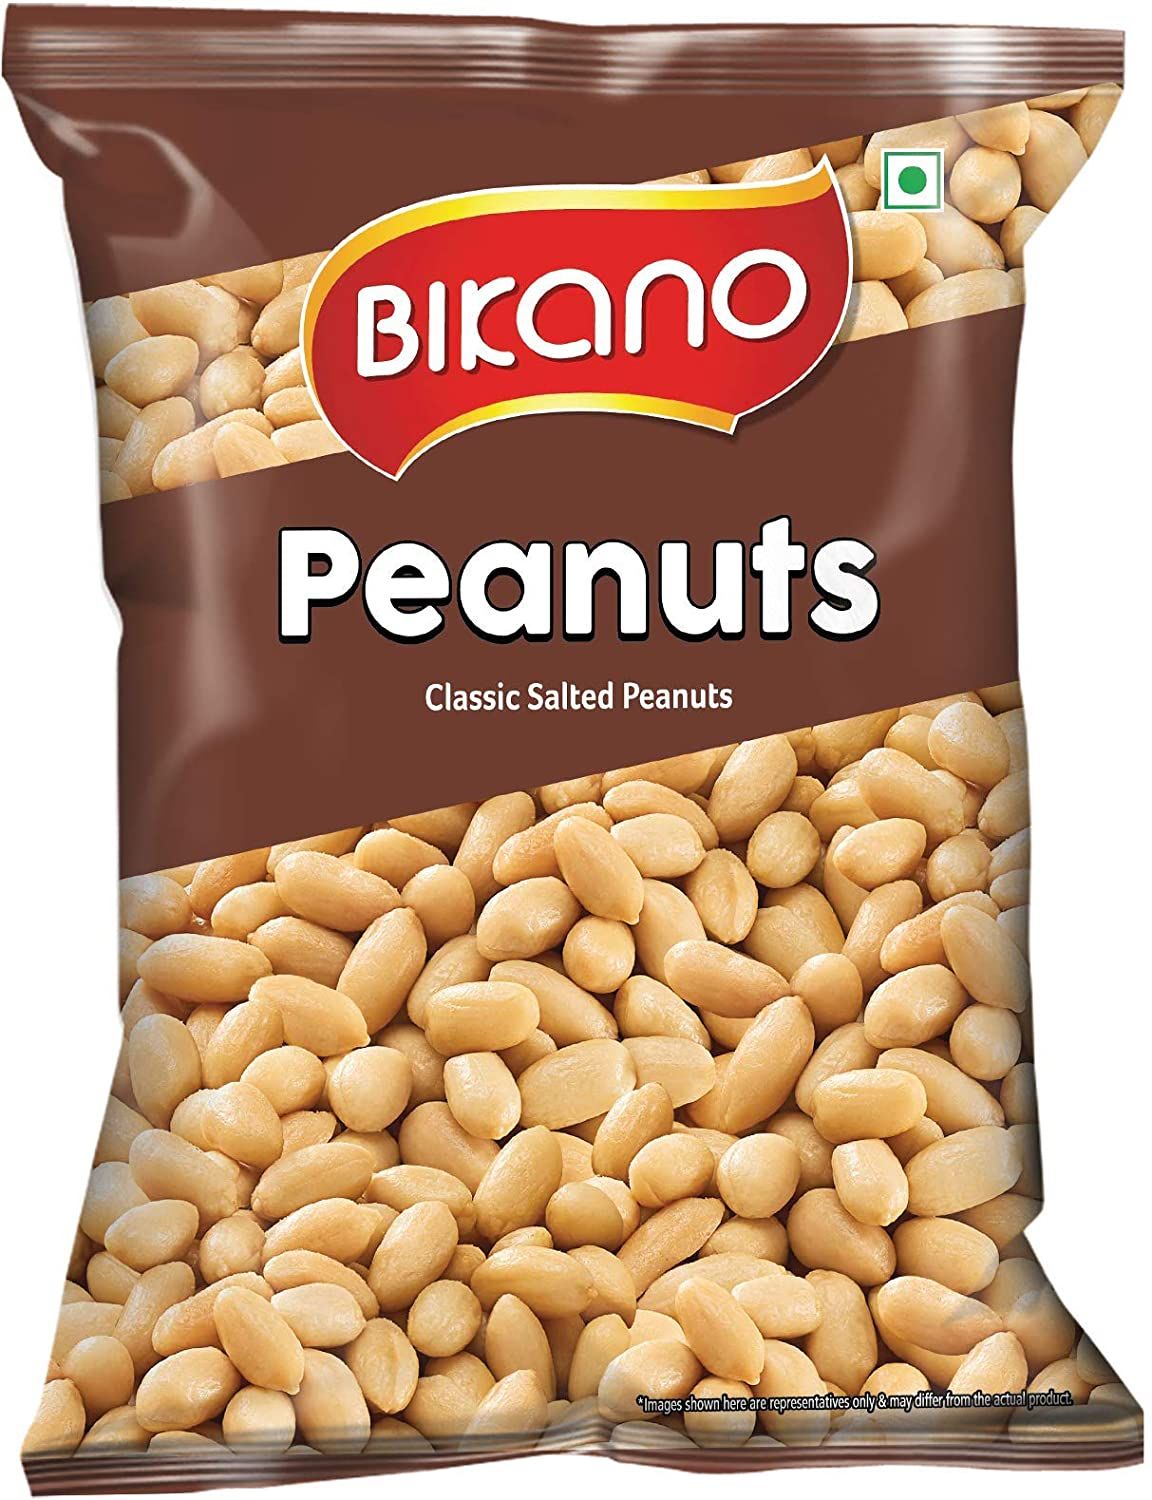 Bikano Peanut Salted Image